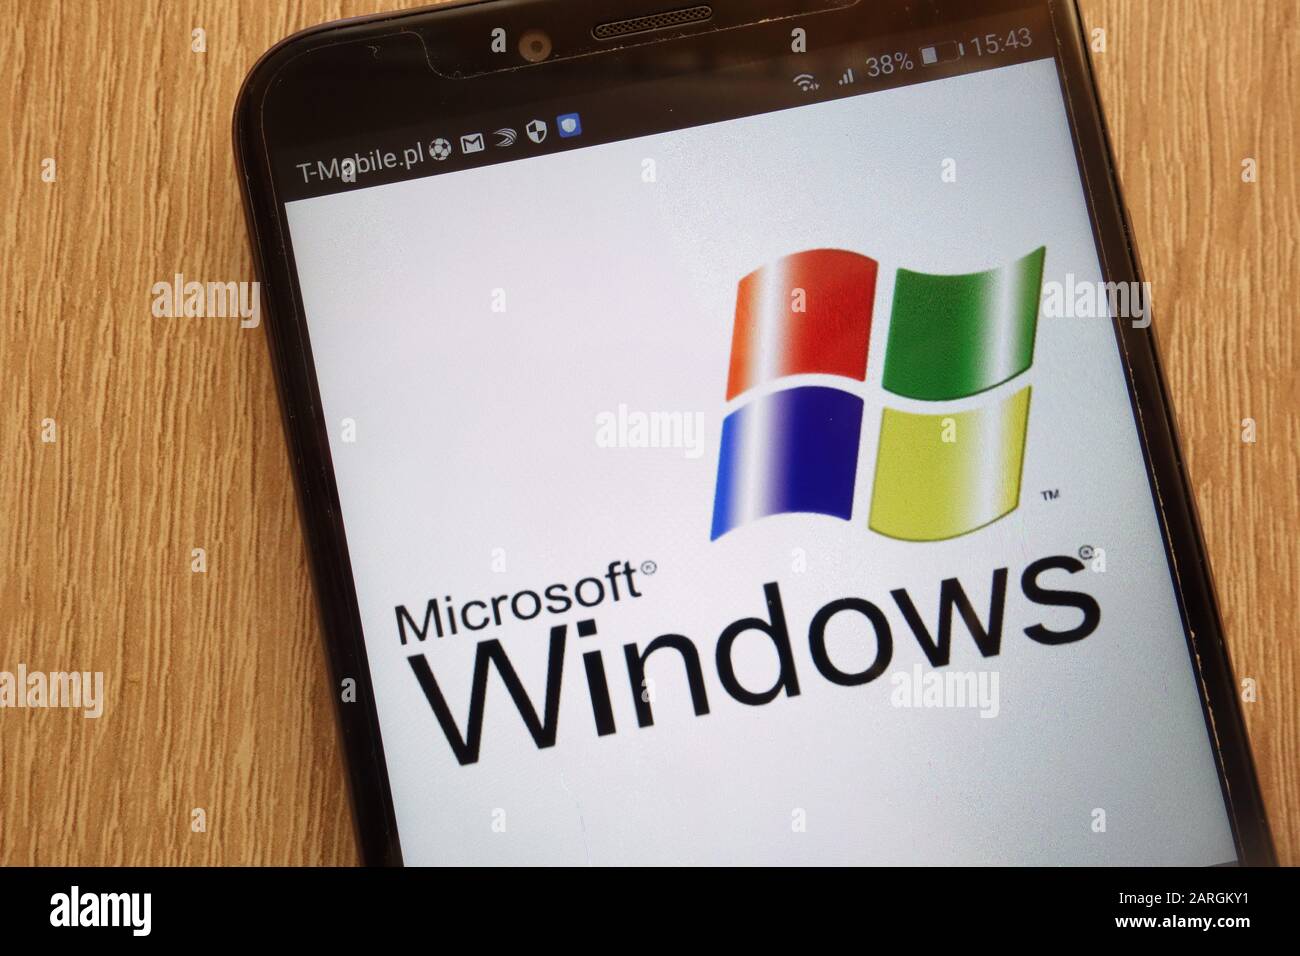 Logo Microsoft Windows visualizzato su uno smartphone moderno Foto Stock